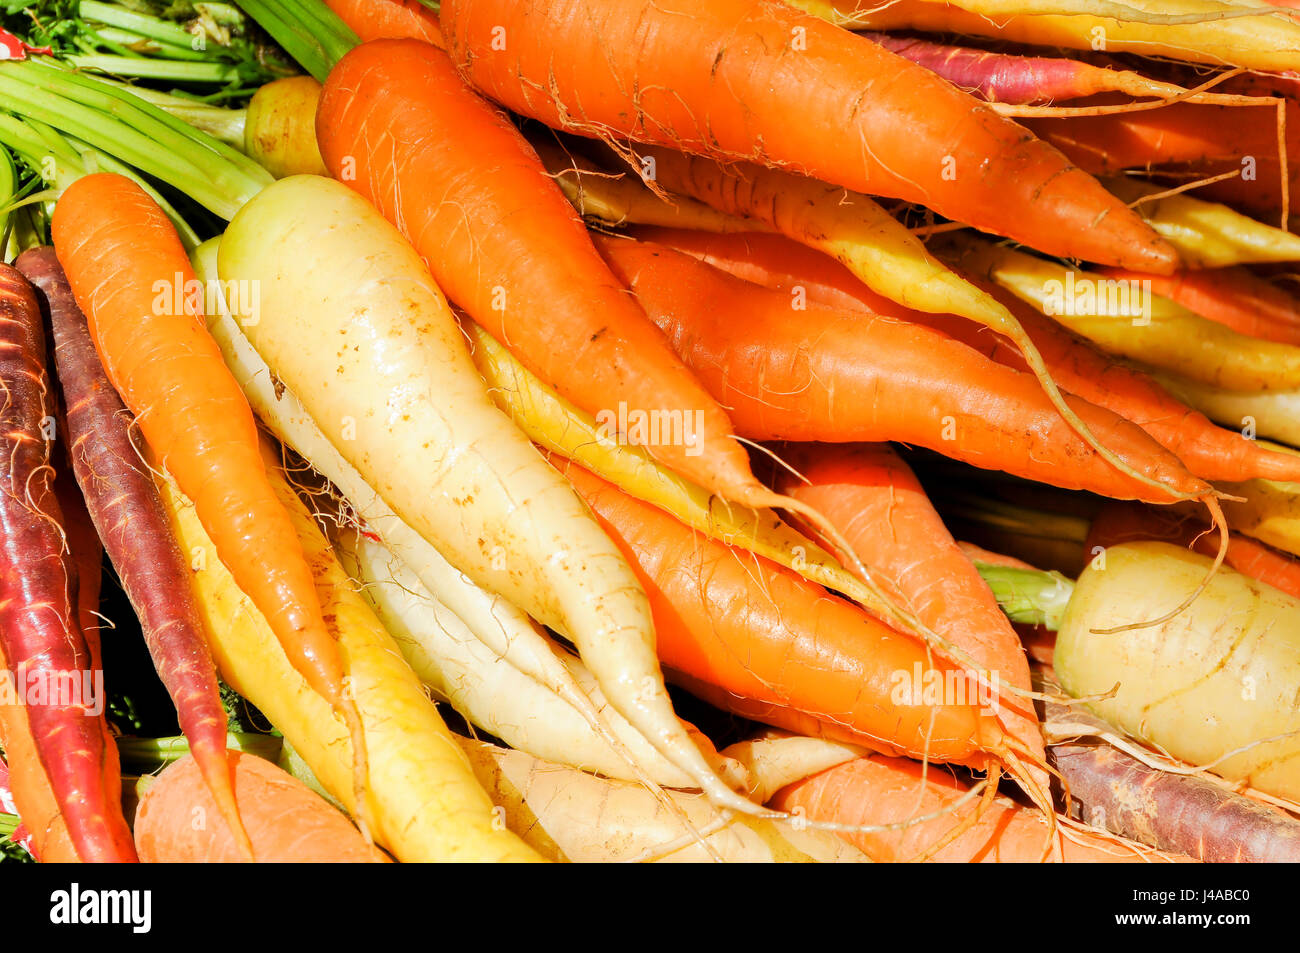 Multi-colored Carrots Stock Photo